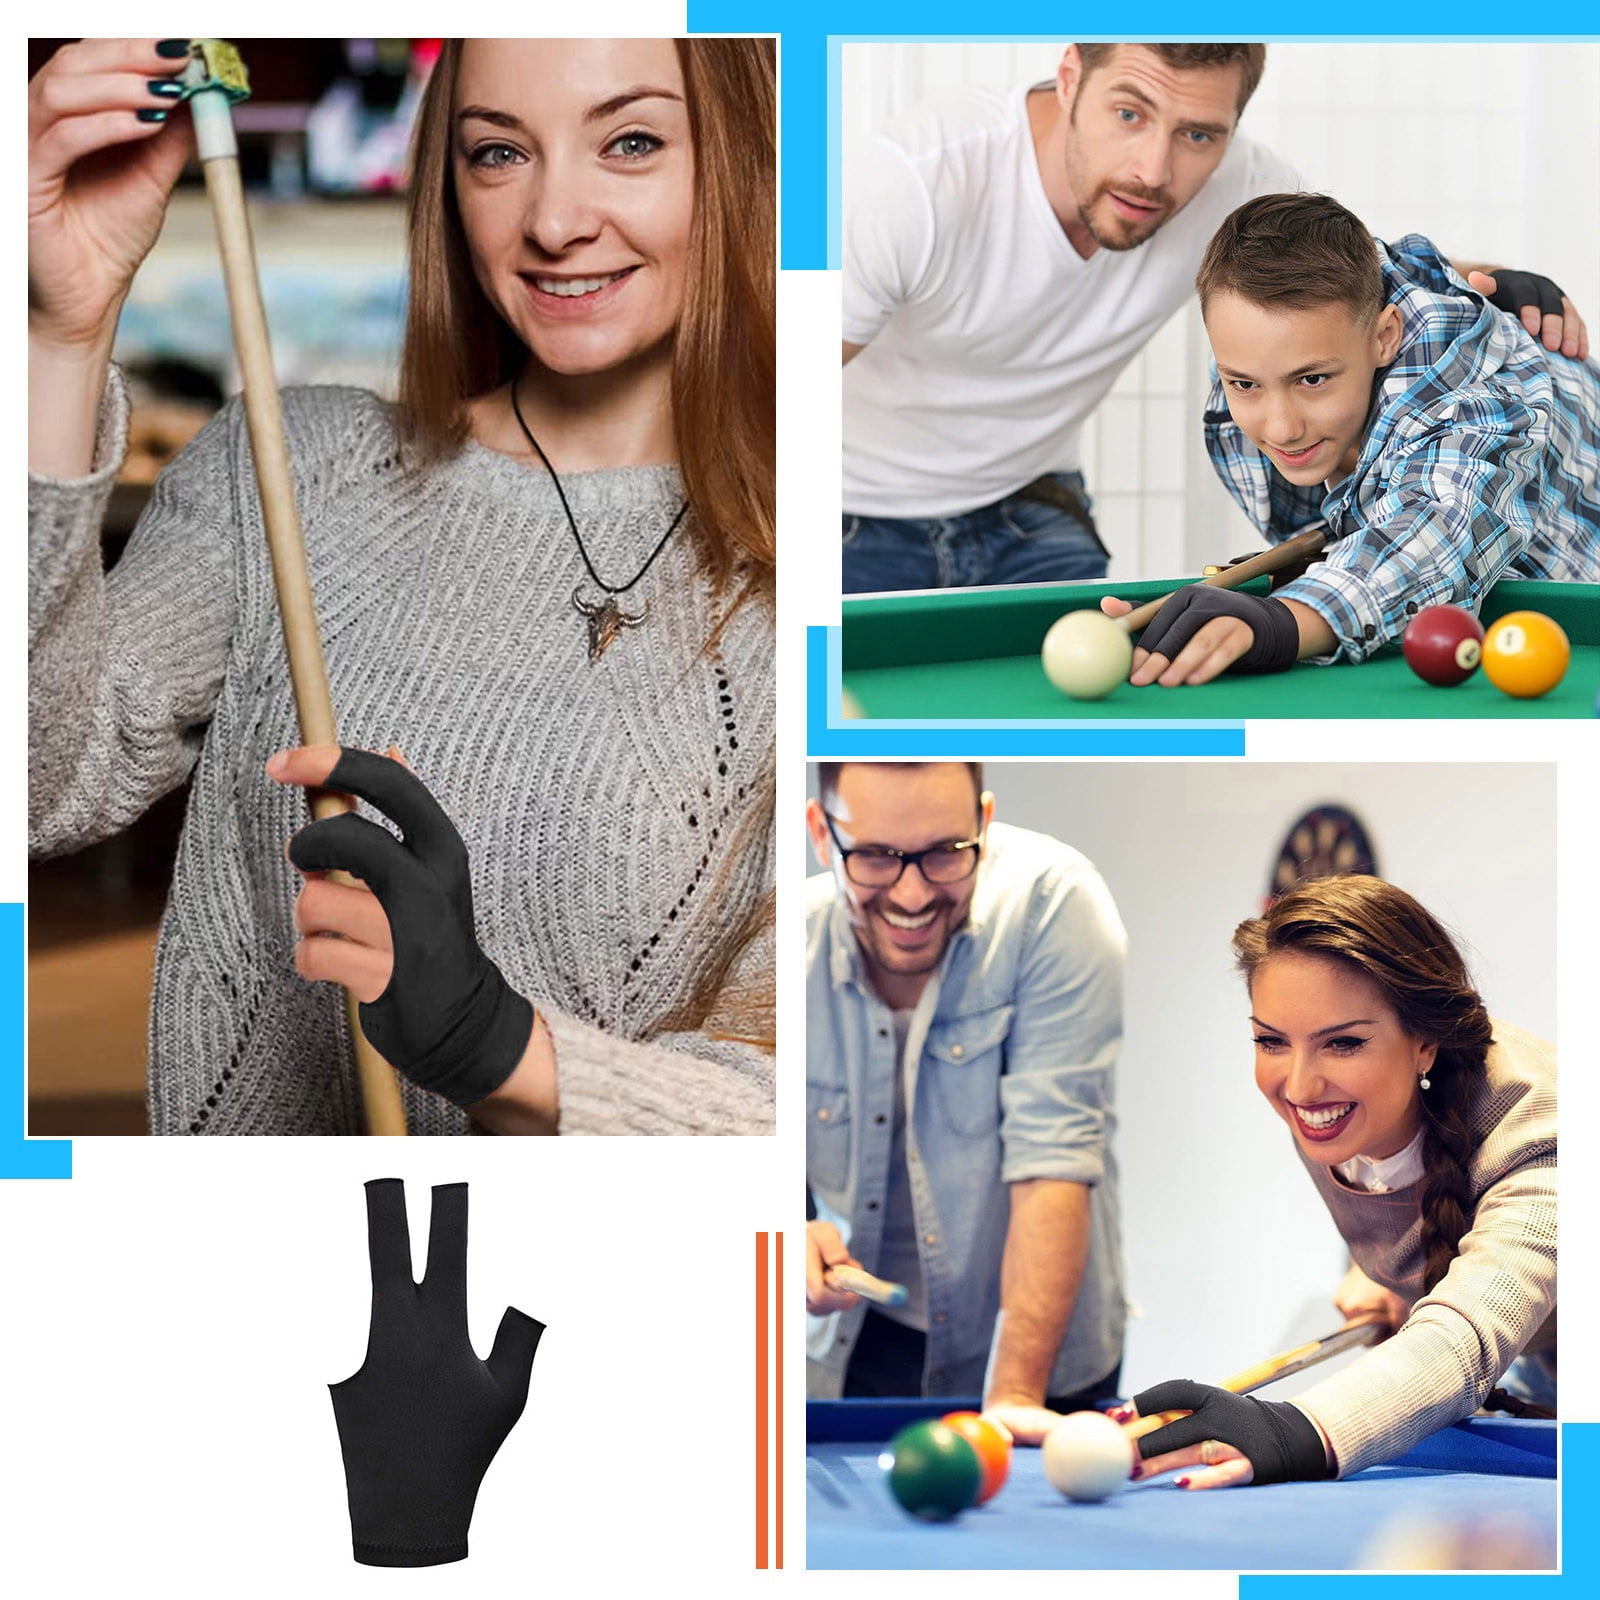 1 Pcs - Absorbent Billiard Gloves Three Fingers Spandex Cue Sport Glove  Billiard Cue Shooter Glove